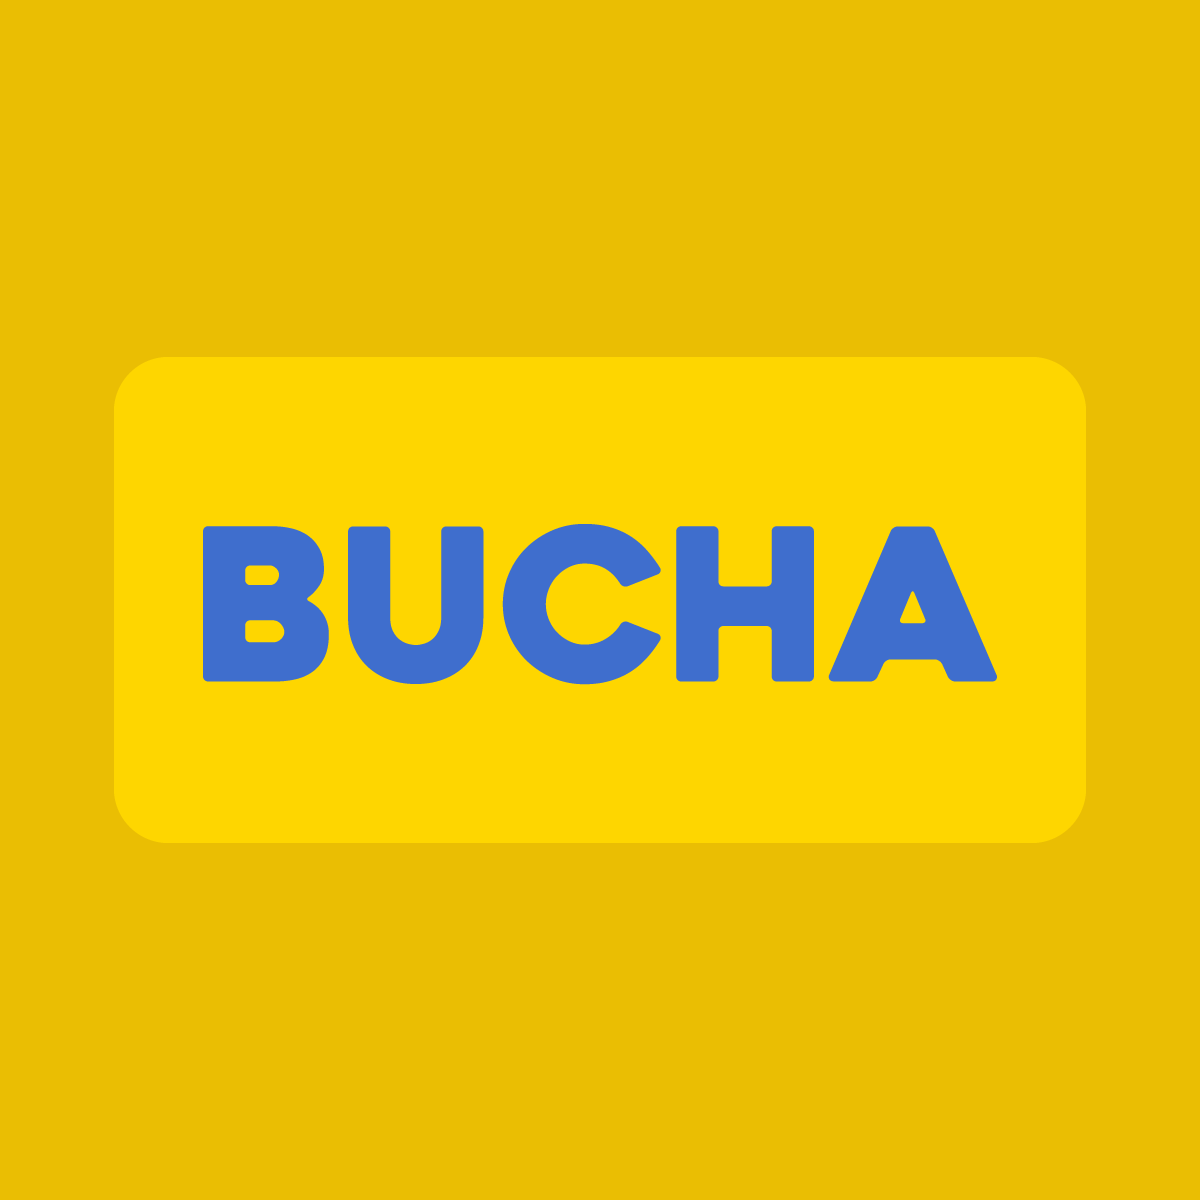 Bucha - Support Ukraine